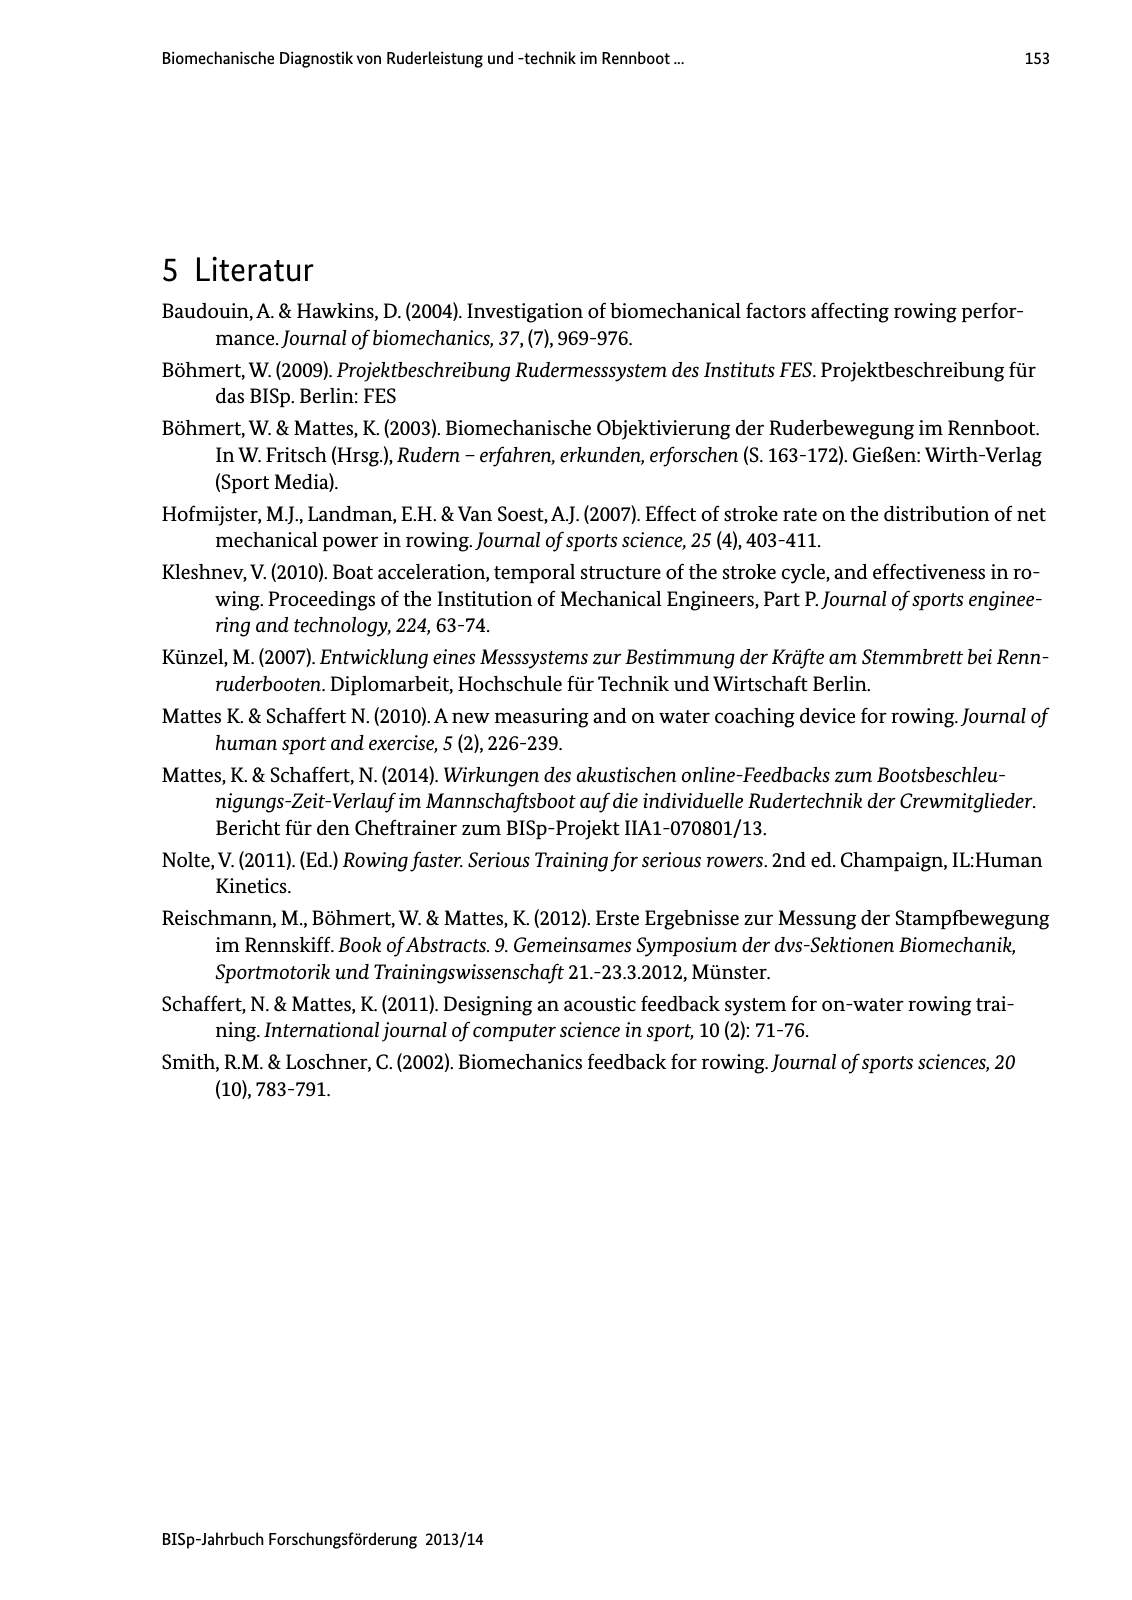 Vorschau BISp-Jahrbuch Forschungsförderung 2013/14 Seite 154